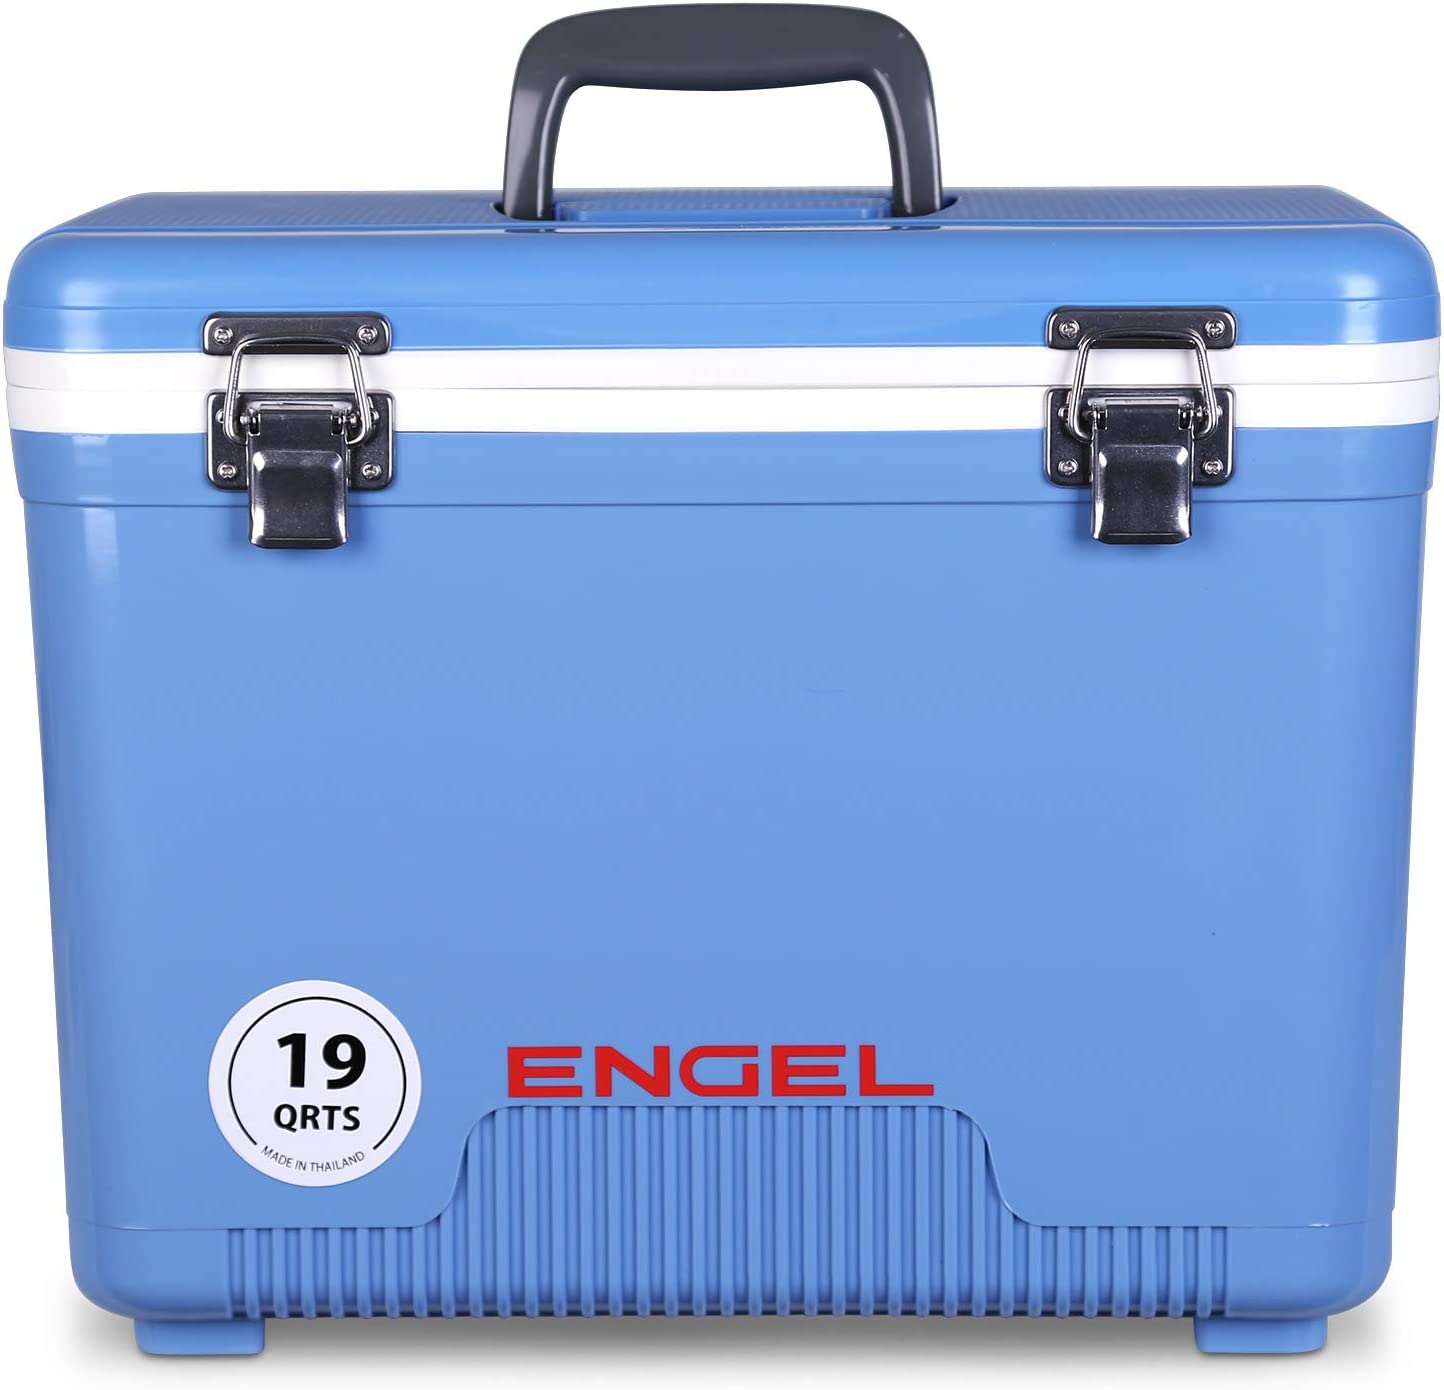 Engel Waterproof Non-Absorbent Hard Cooler